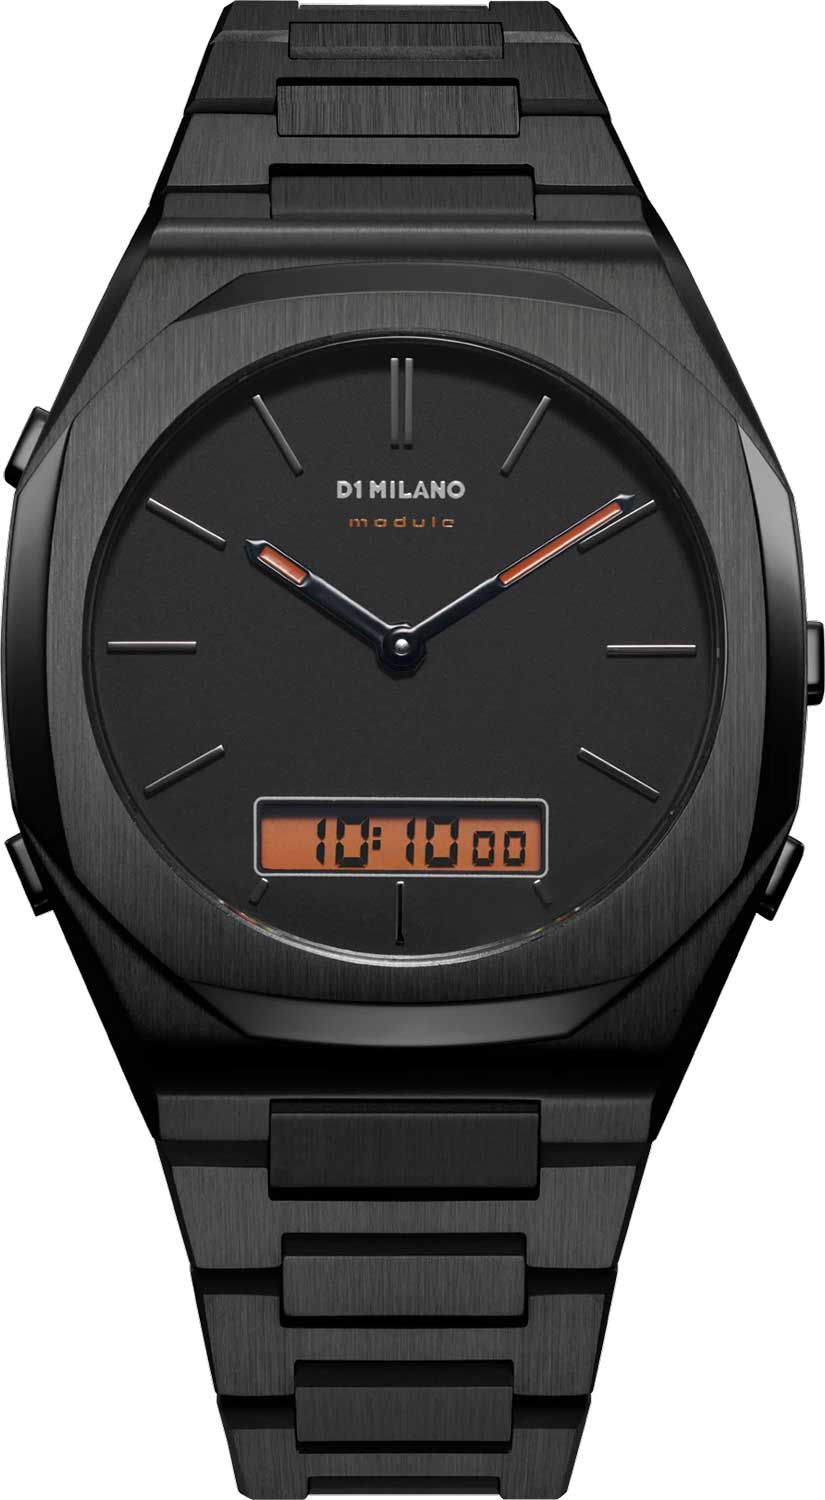 Наручные часы D1 Milano DGBJ02 с хронографом